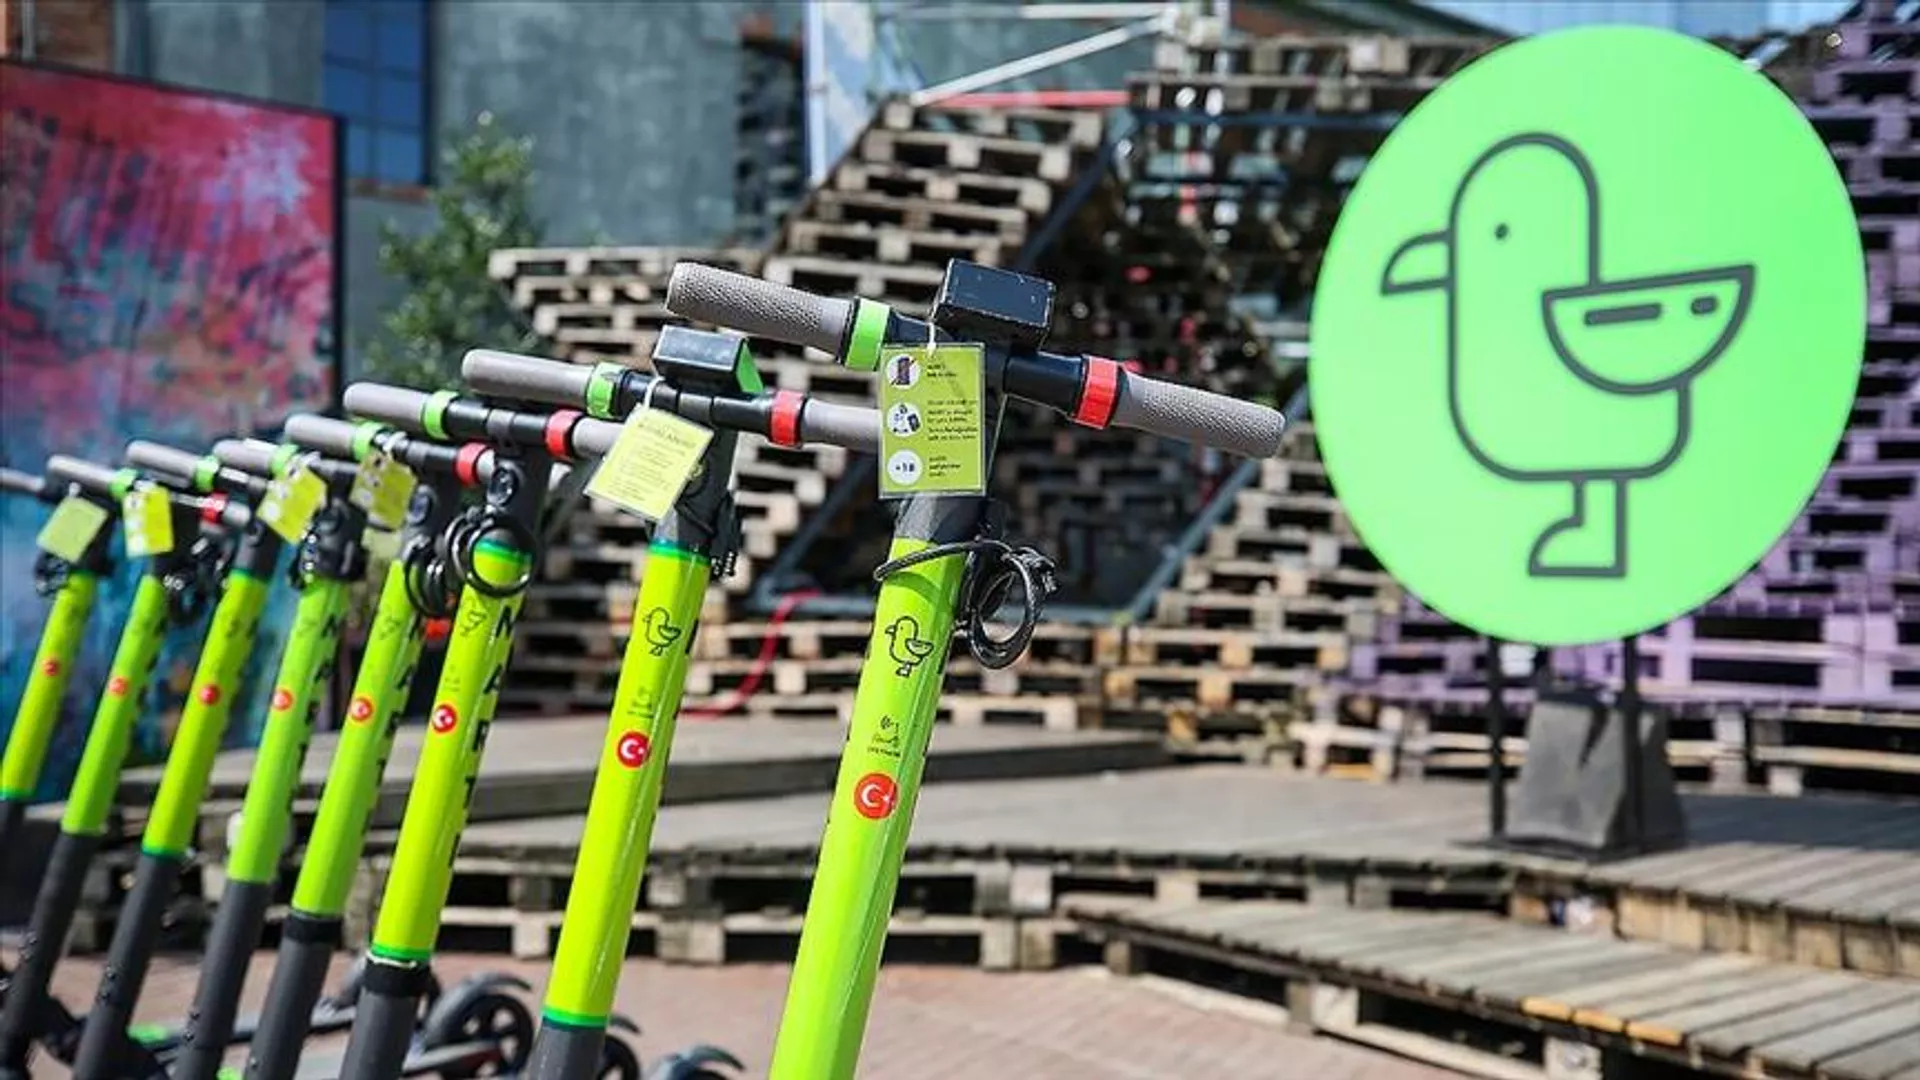 Kadıköy Belediyesi'nden, scooterları toplama kararı: 'Derdimiz yayaların hakkını korumak'